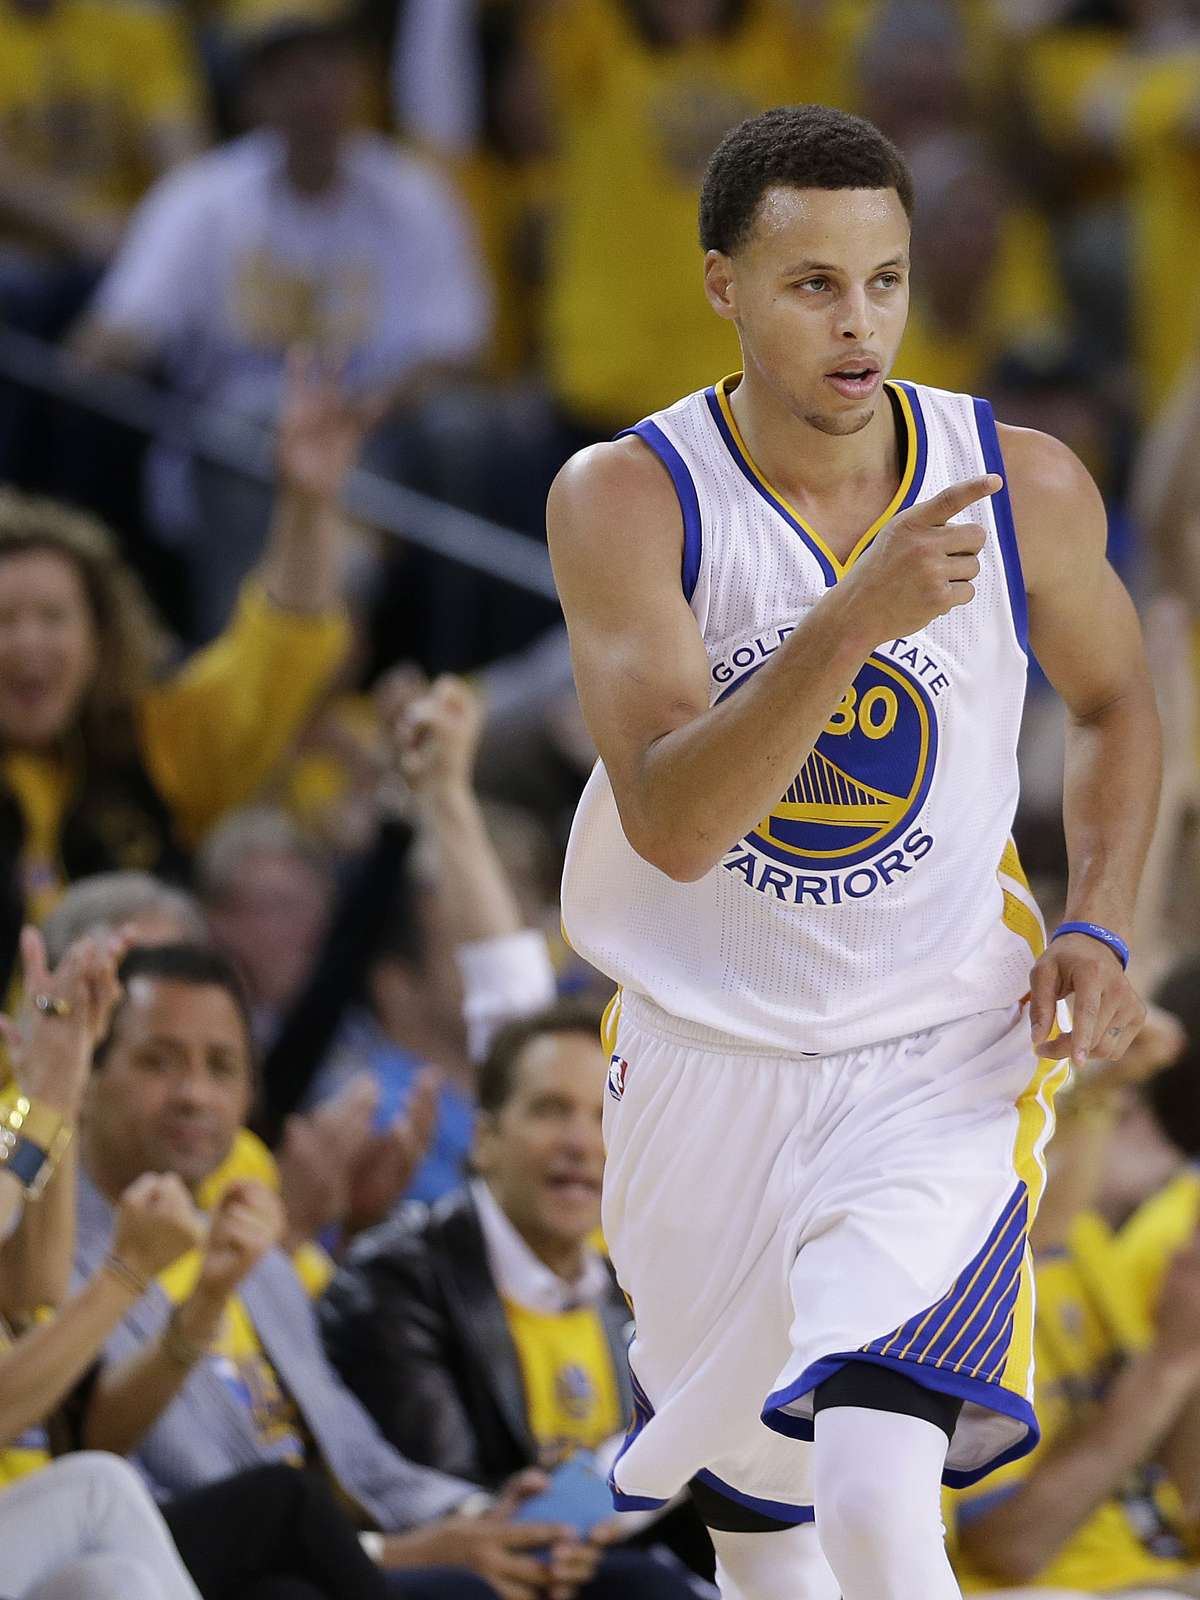 Em jogo de recorde, Curry se torna 4º maior jogador da história em cestas  de três - Gazeta Esportiva